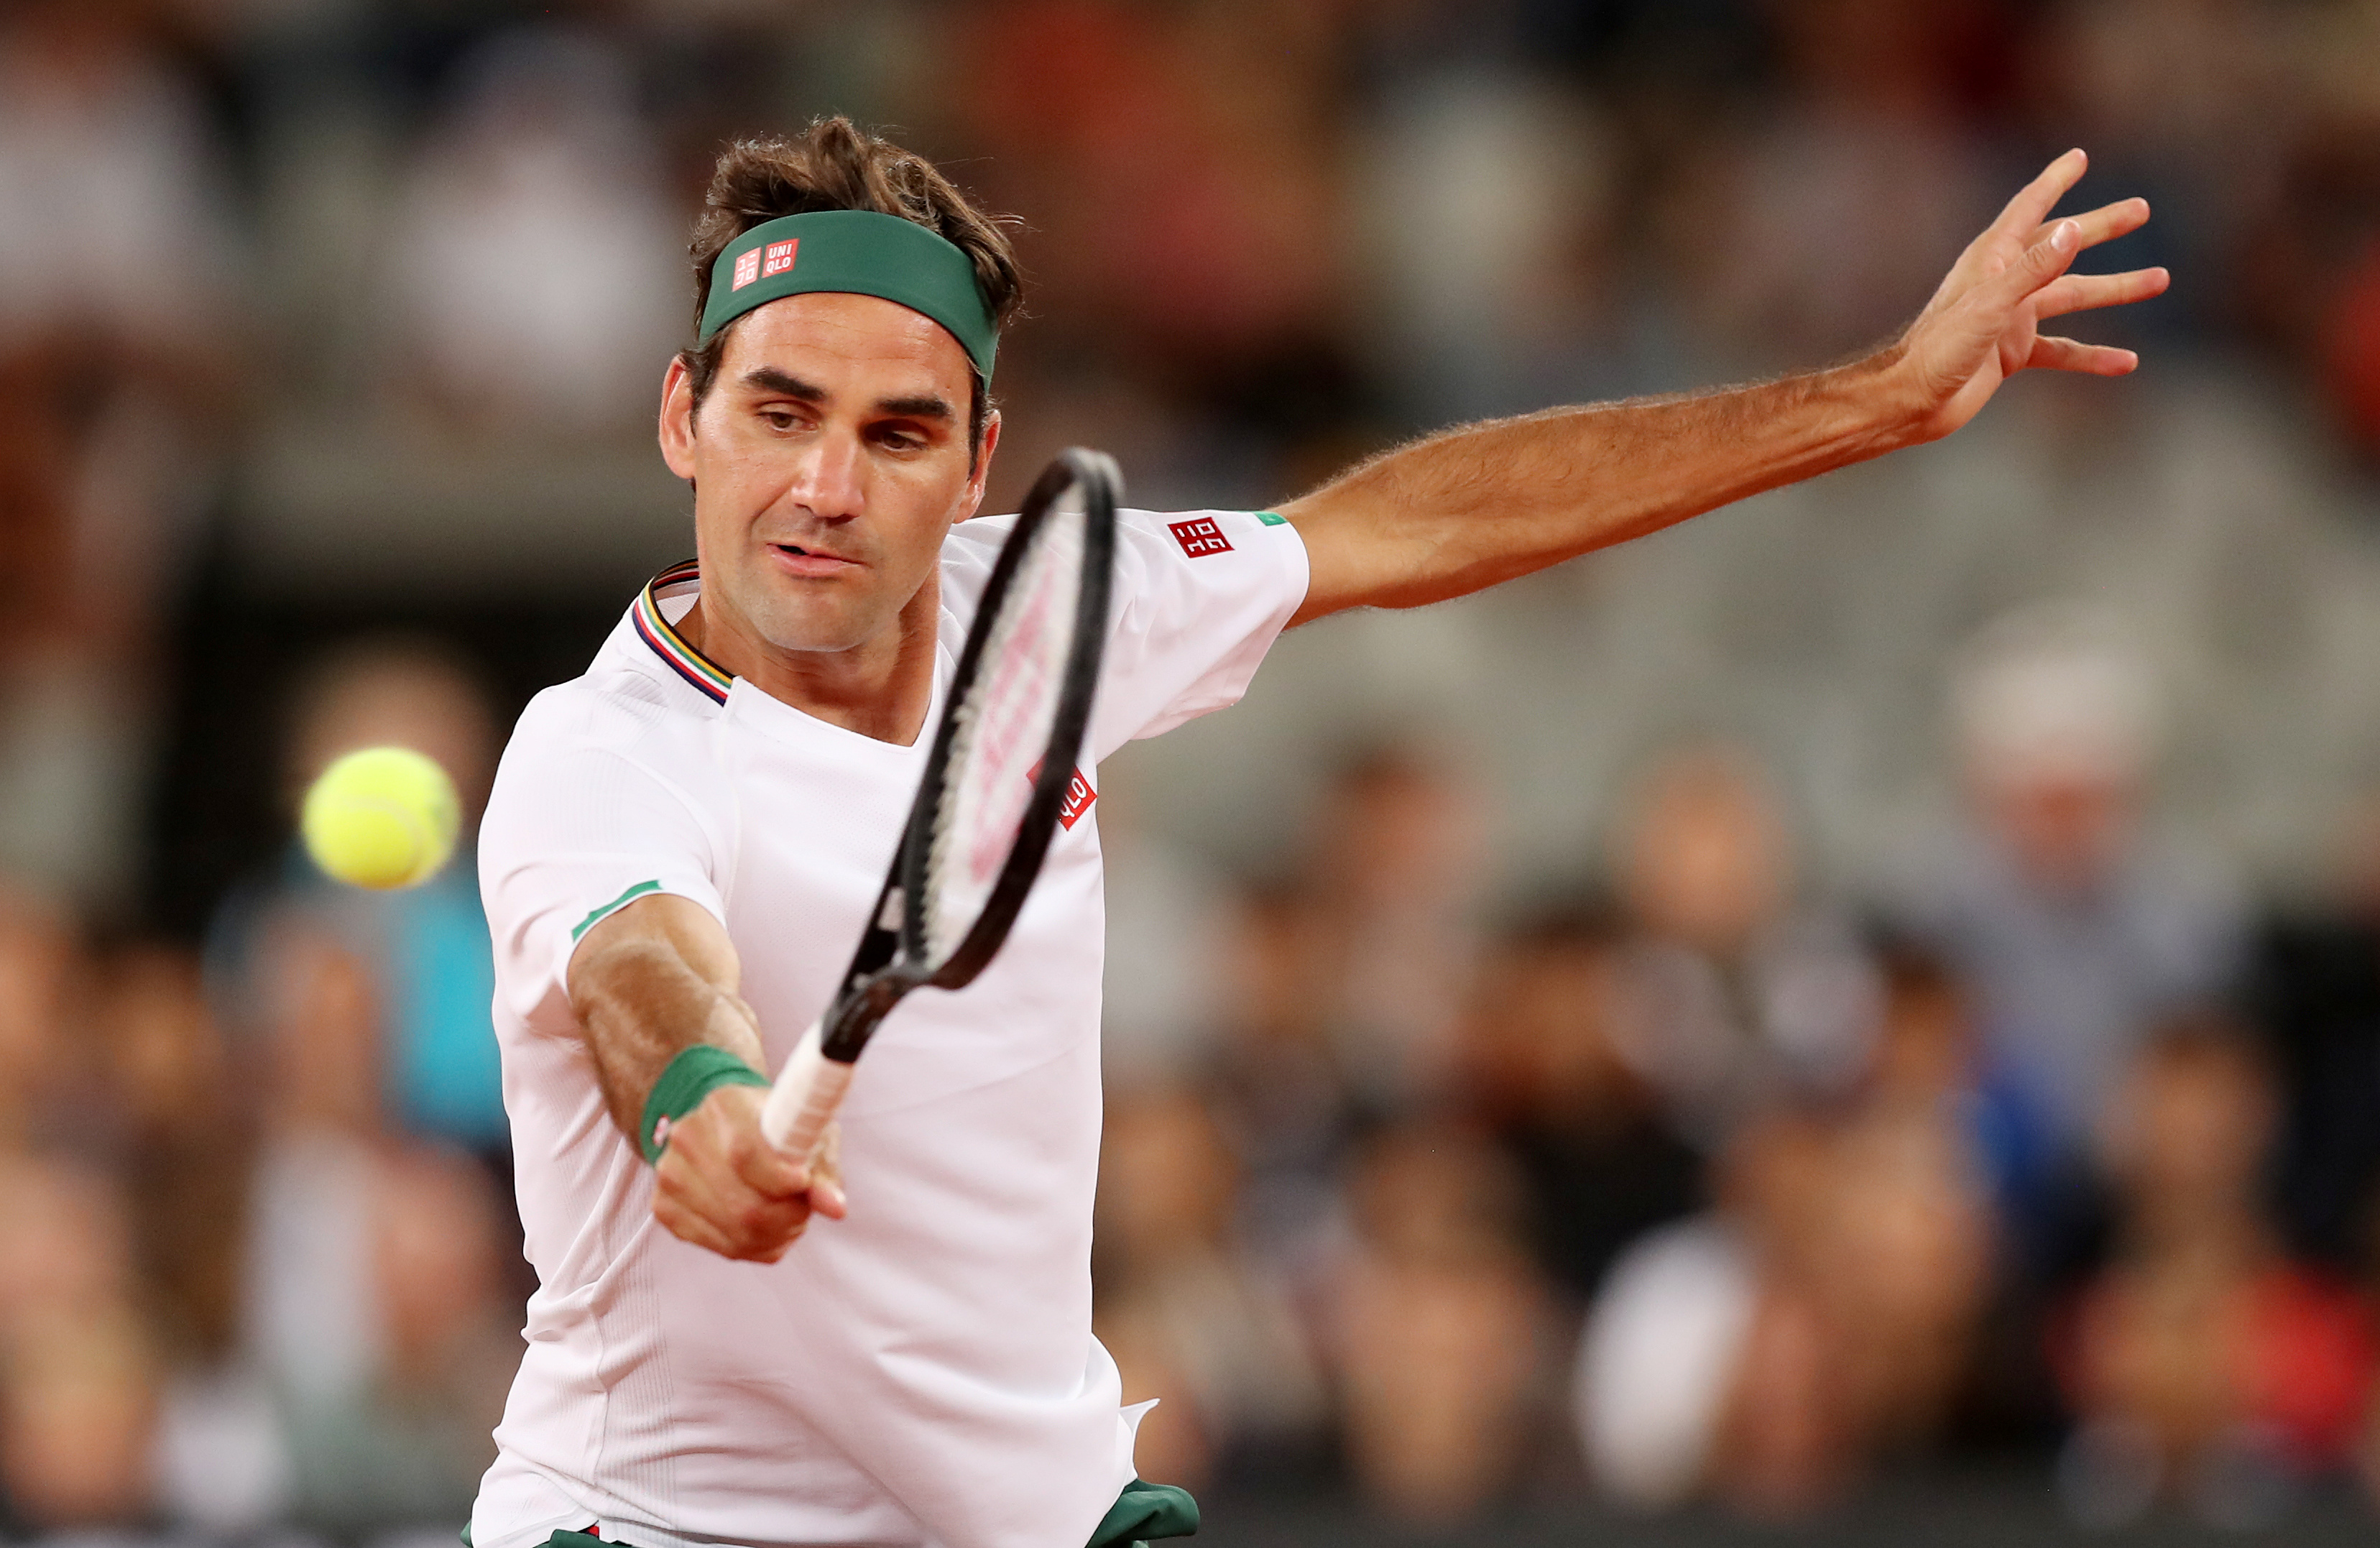 La sorpresa de Federer que conmovió a dos niñas tras ser virales durante la cuarentena en Italia (Video)